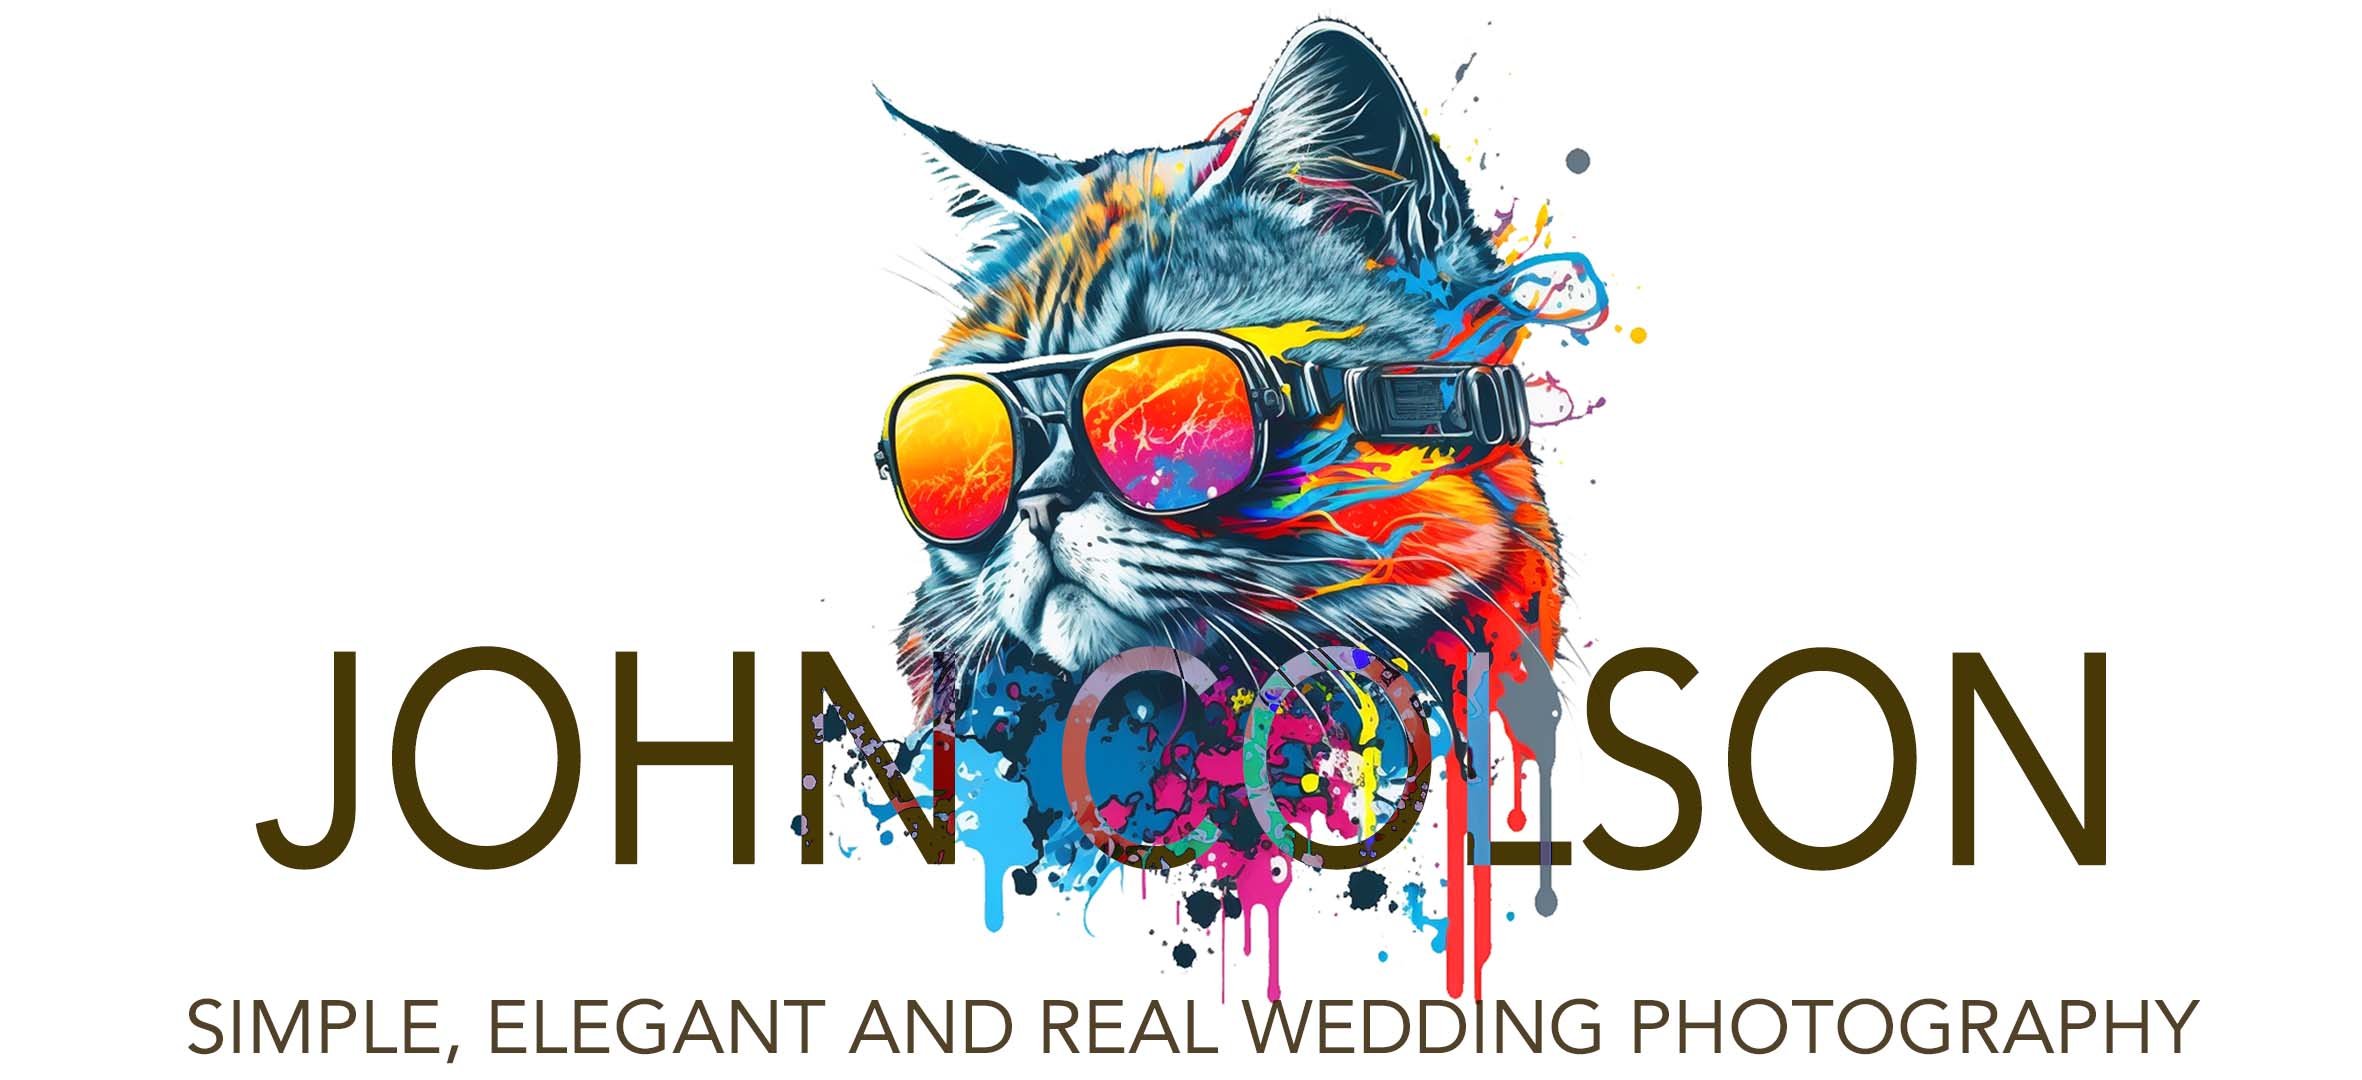 Worcestershire Wedding Photographer - Stylish Documentary Style Photography - www.johncolson.com